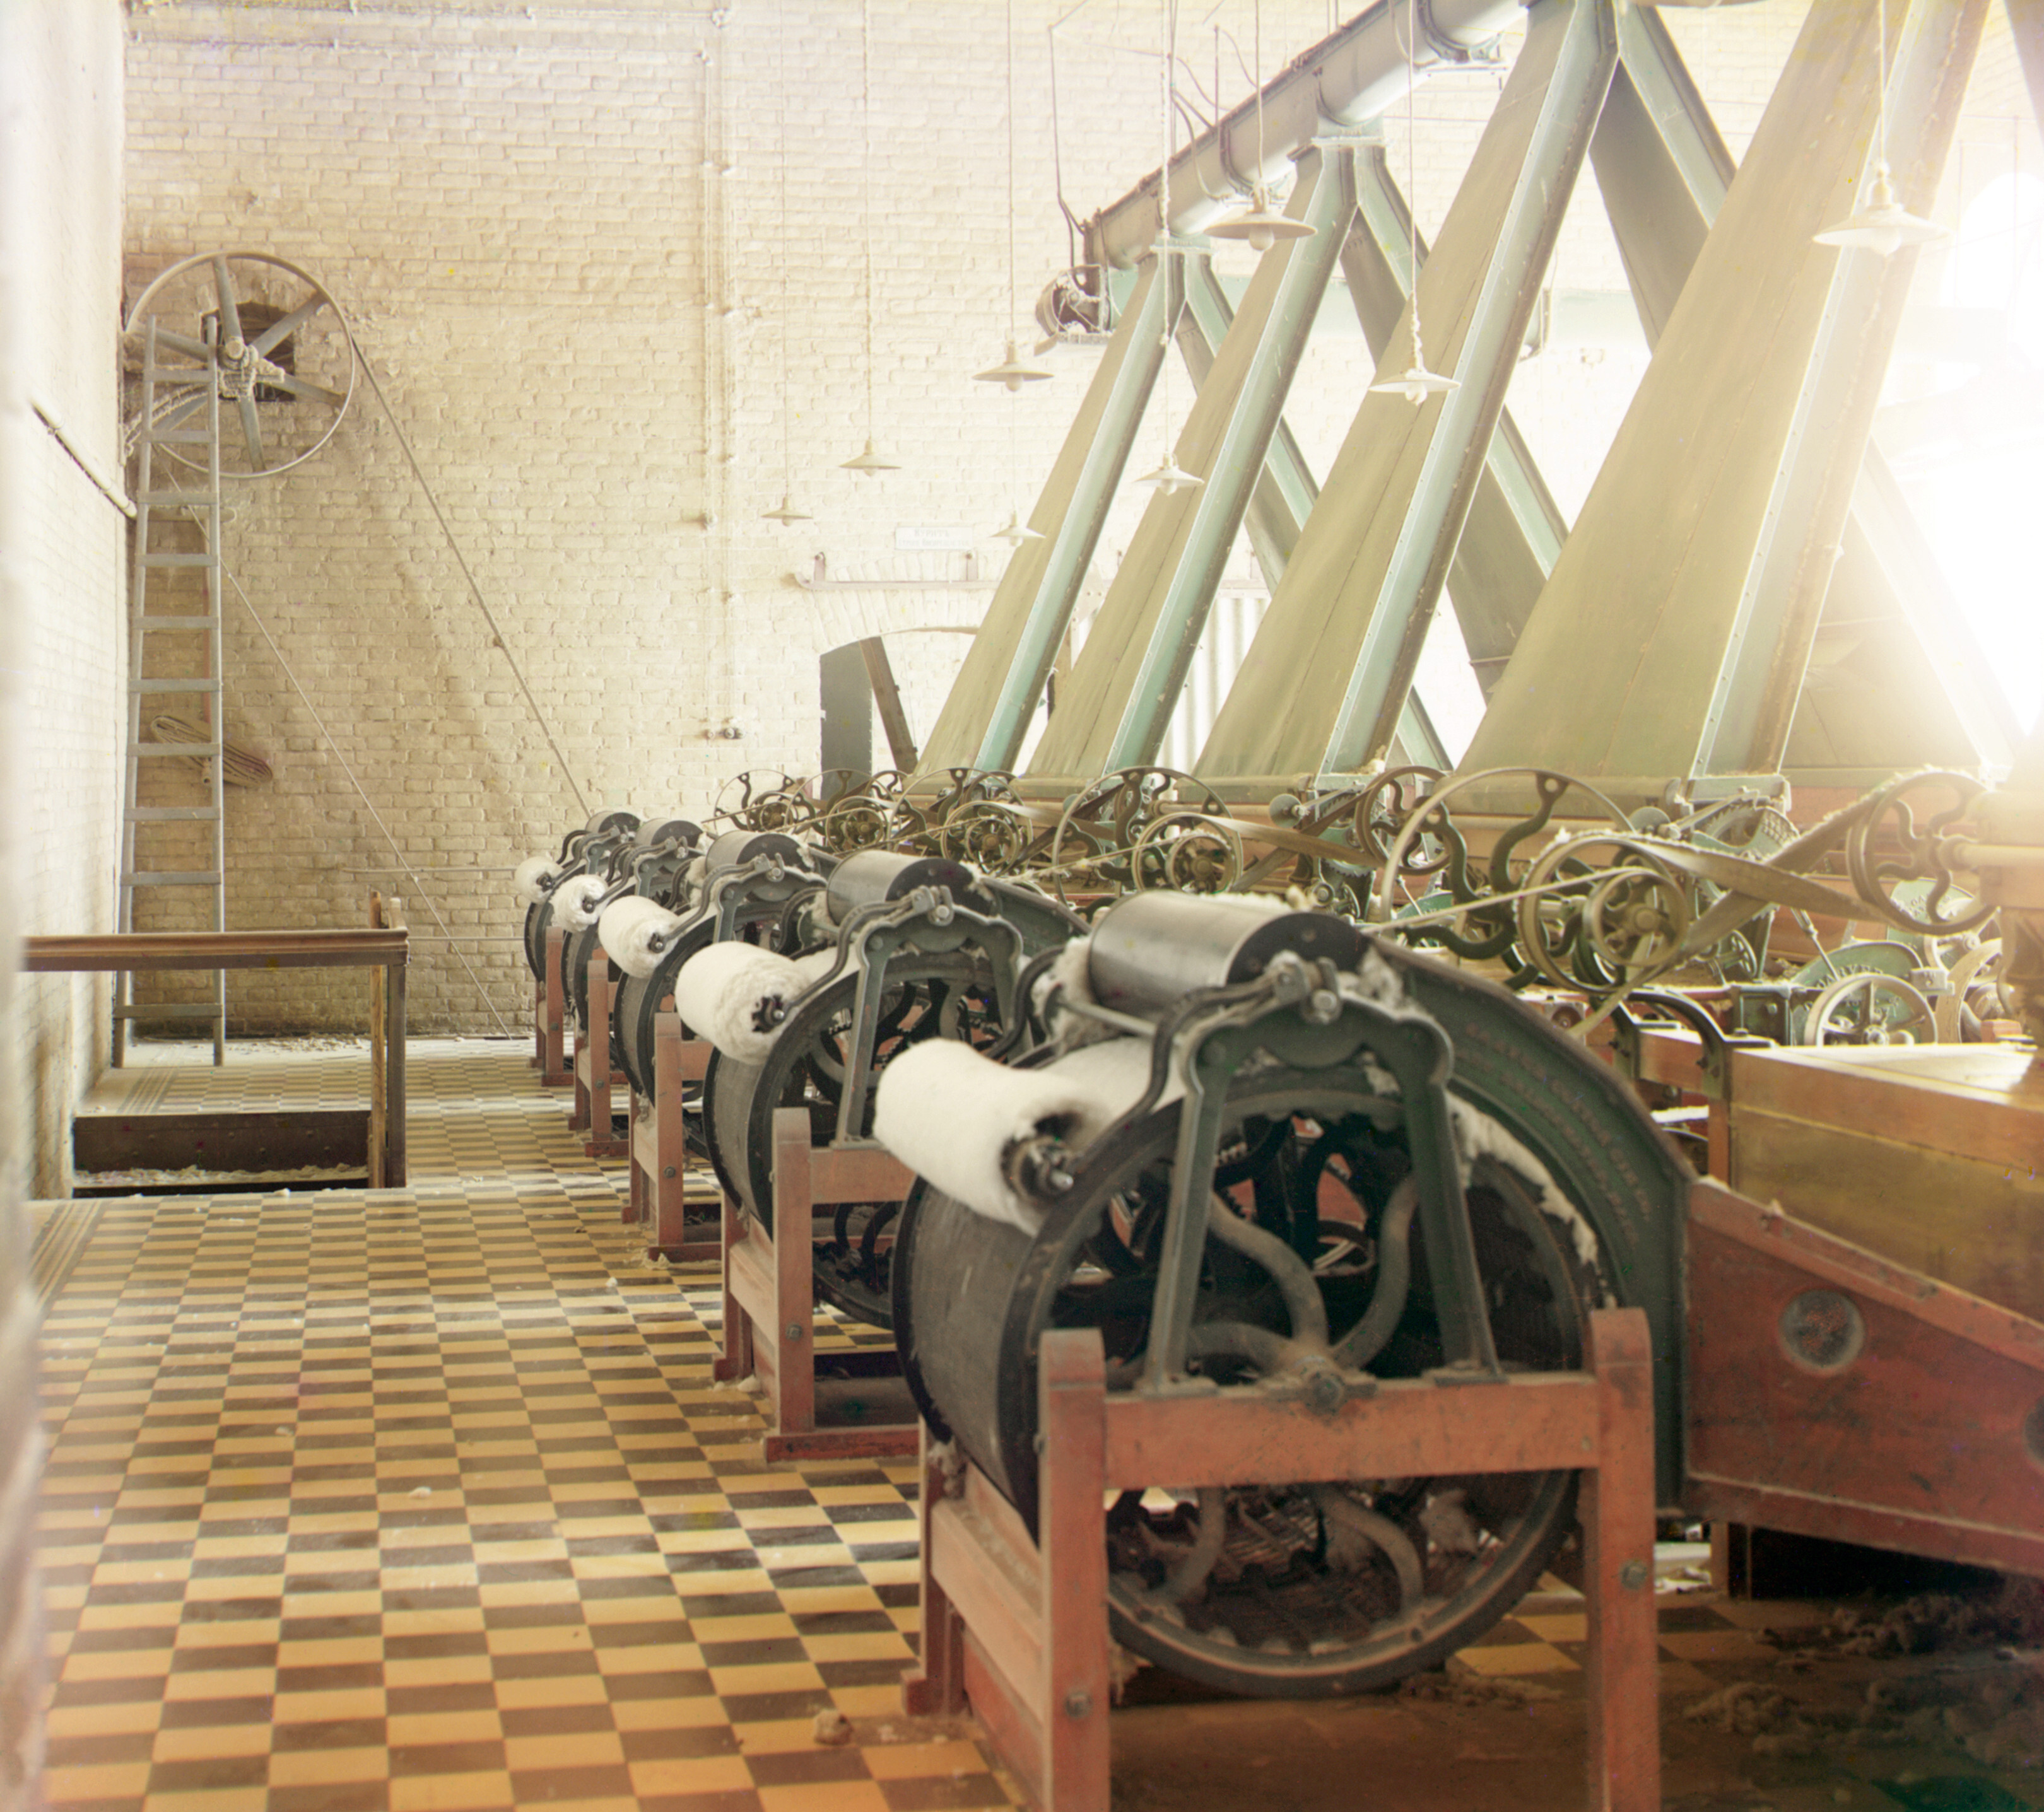 Интерьер хлопчатобумажной фабрики с машинами по производству хлопчатобумажной нити, вероятно, в Ташкенте, 1905-1915, фотограф Сергей Прокудин-Горский